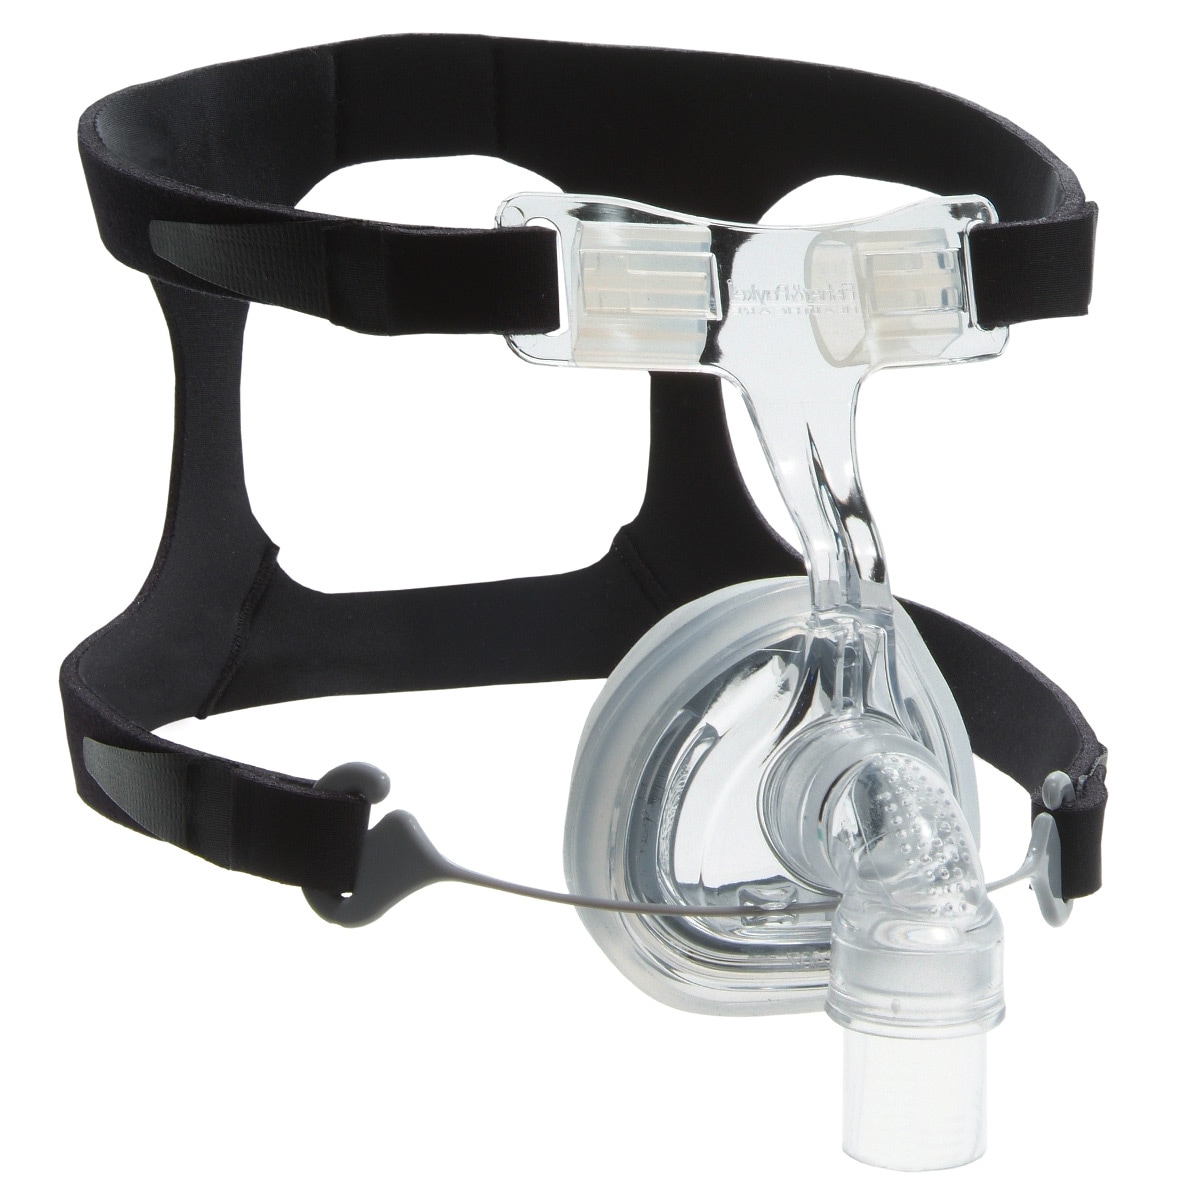 FlexiFit HC 407 Premium CPAP-Maske- Nasenmaske für Schlafapnoetherapie- 2- Generation- komplett mit Stretchgear-Kopfgurtsystem